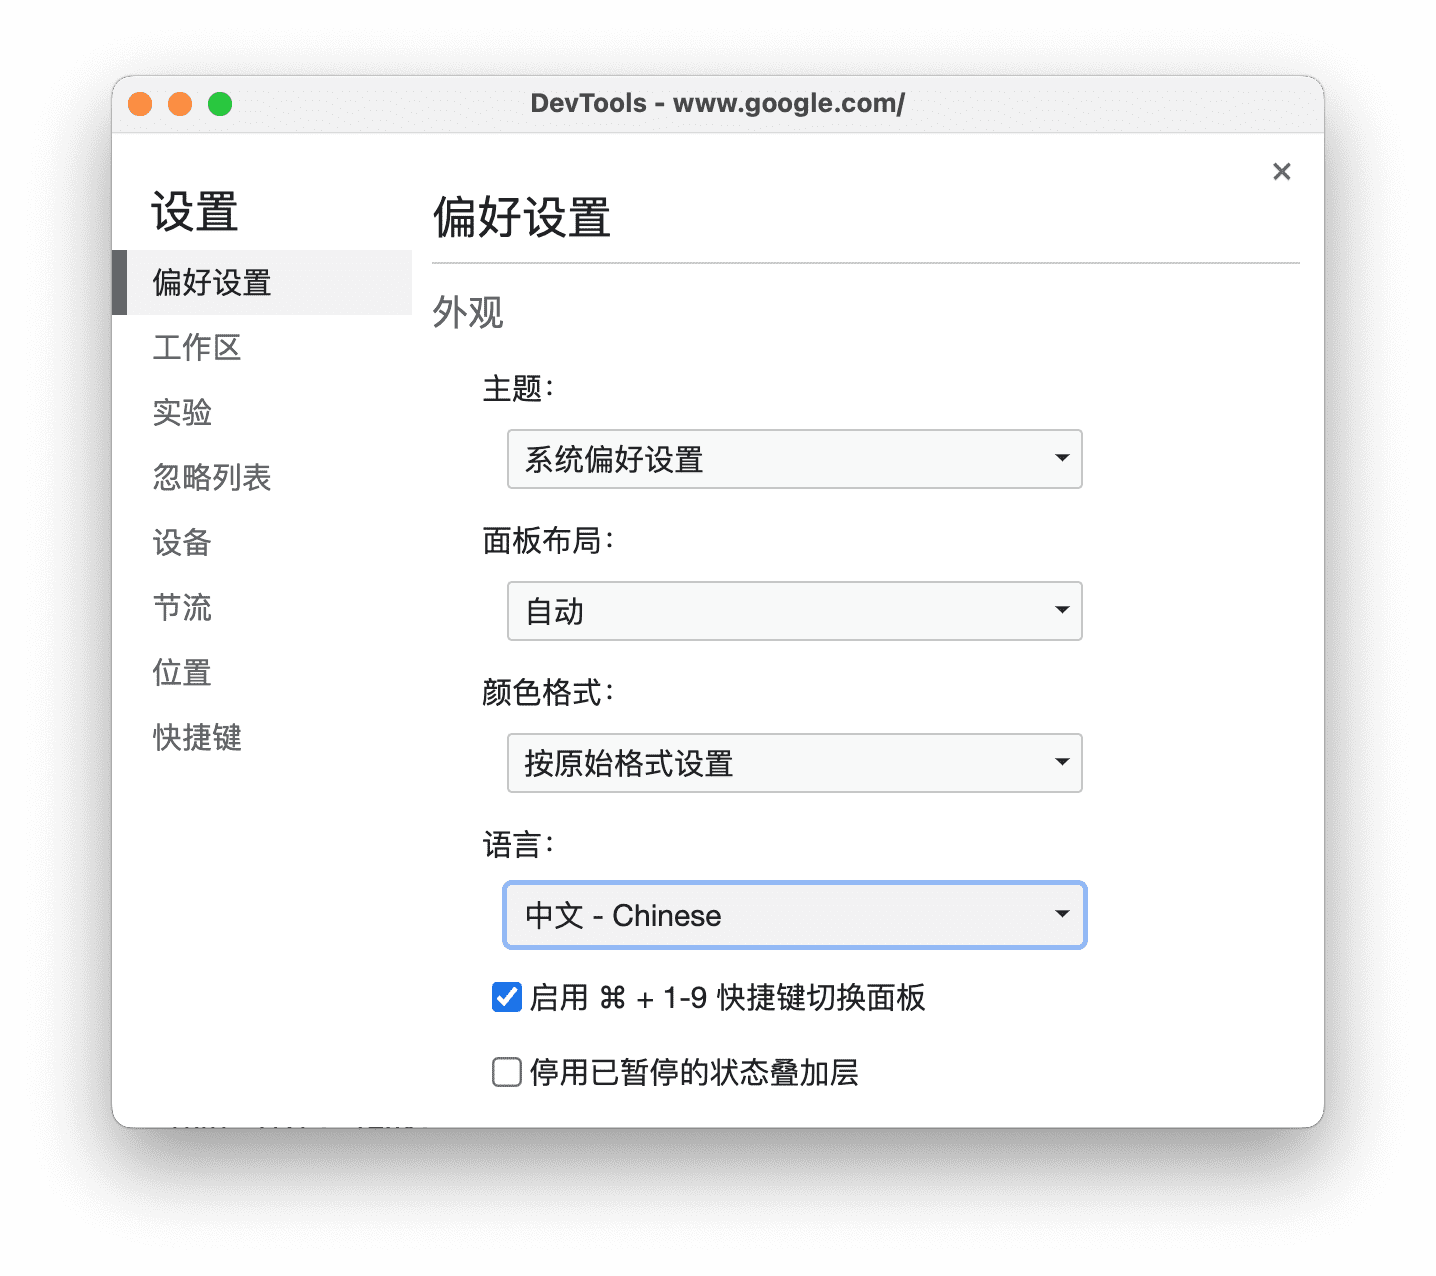 پانل تنظیمات به زبان چینی.